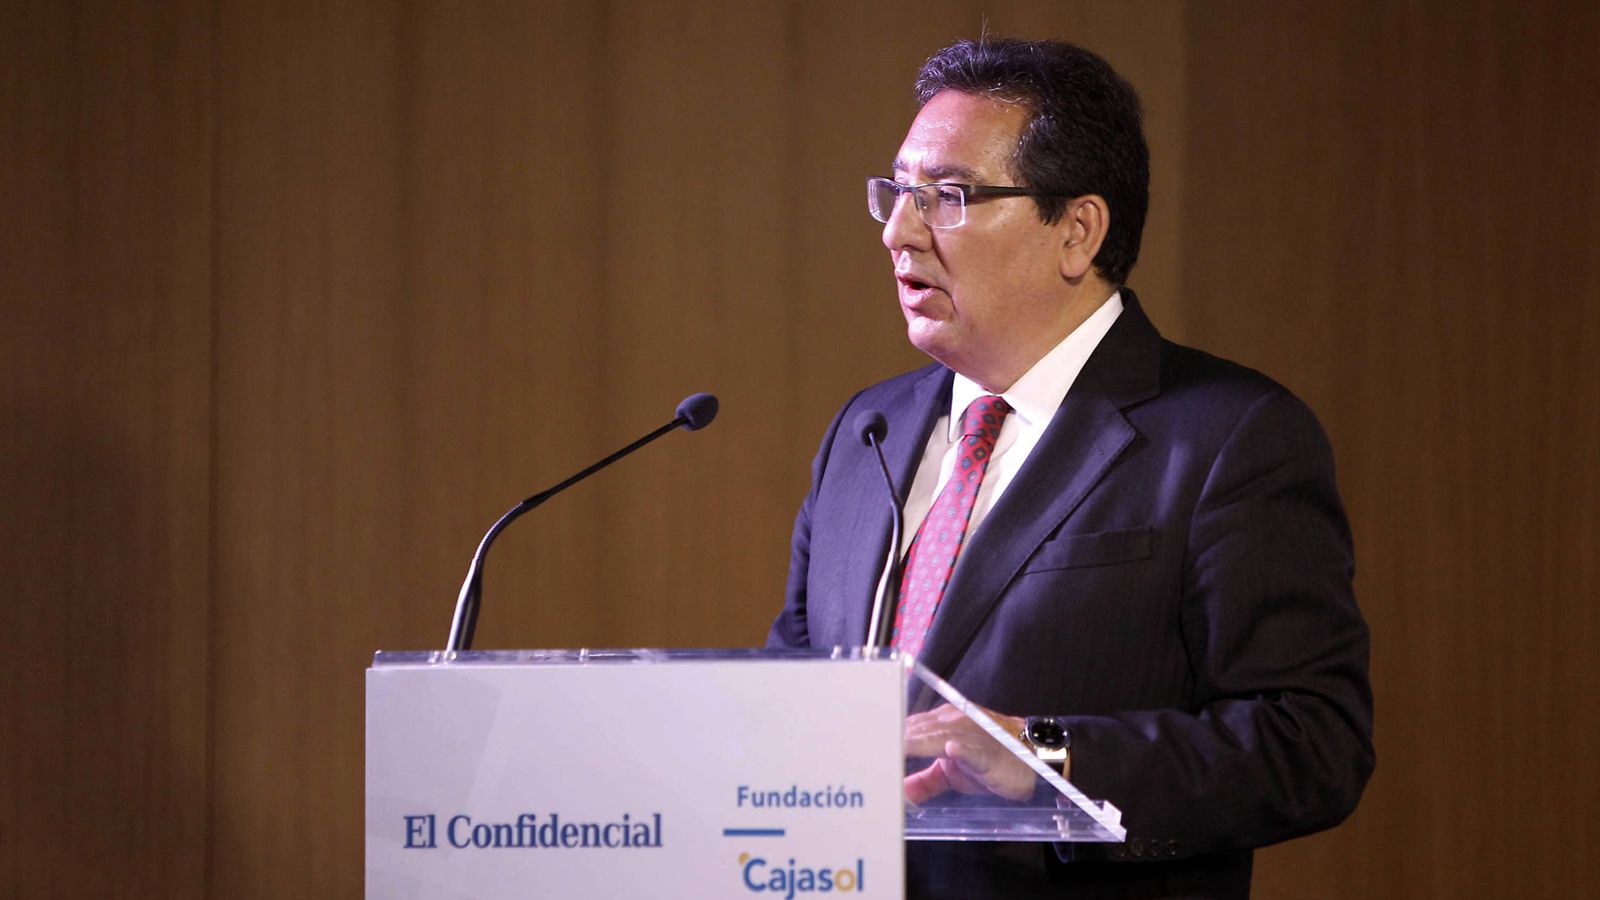 Foto: El presidente de la Fundación Cajasol, Antonio Pulido. (Foto: Fernando Ruso)